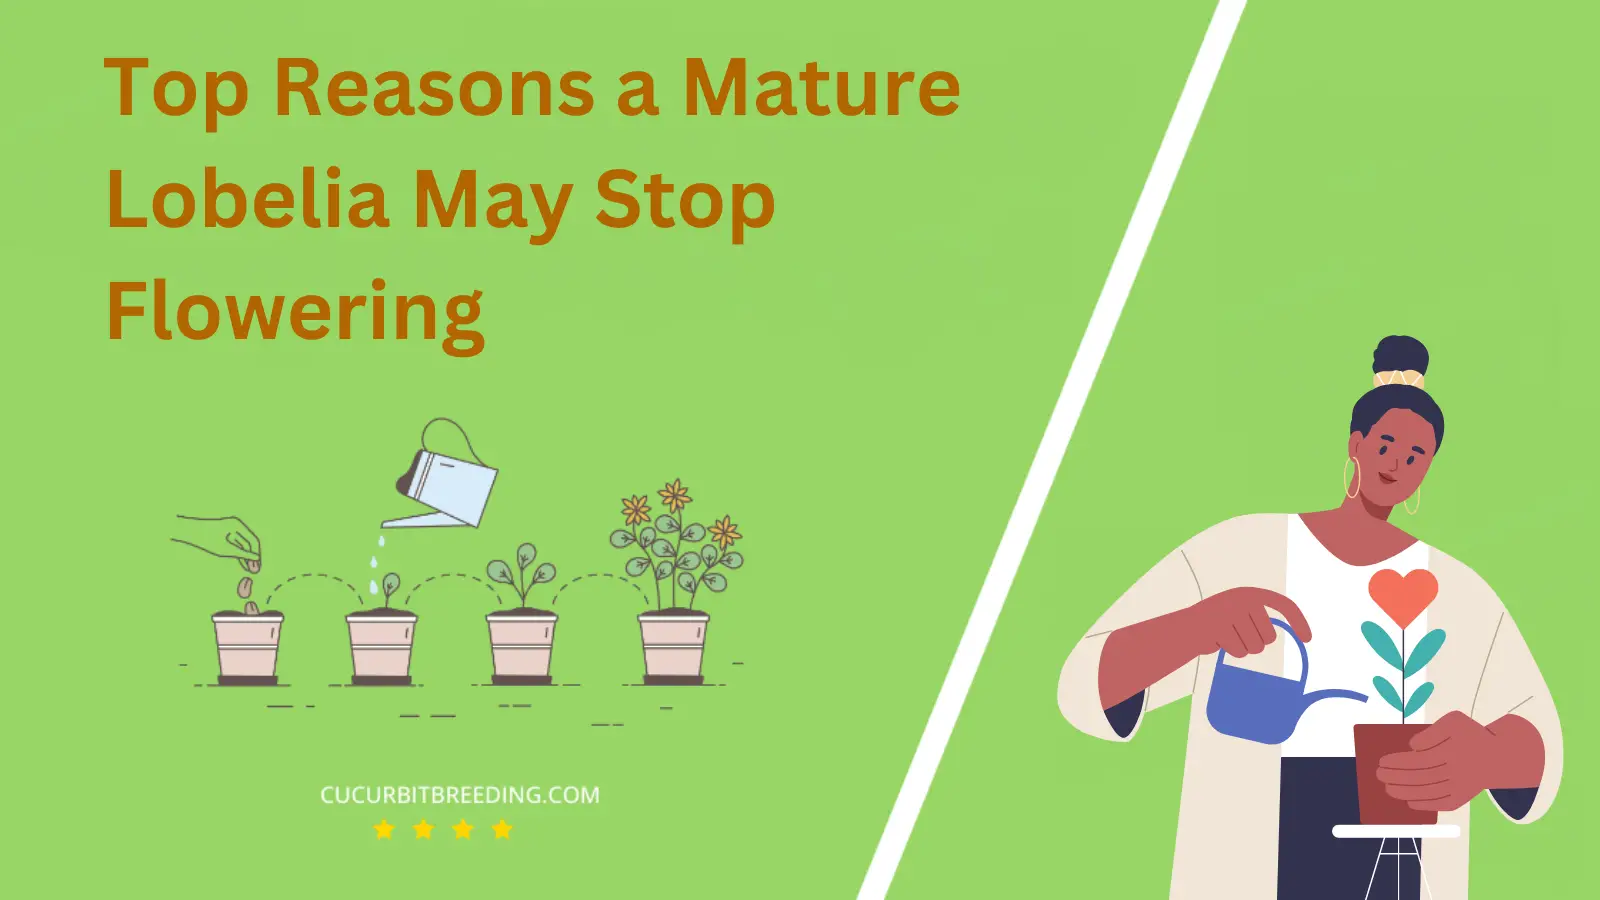 Top Reasons a Mature Lobelia May Stop Flowering